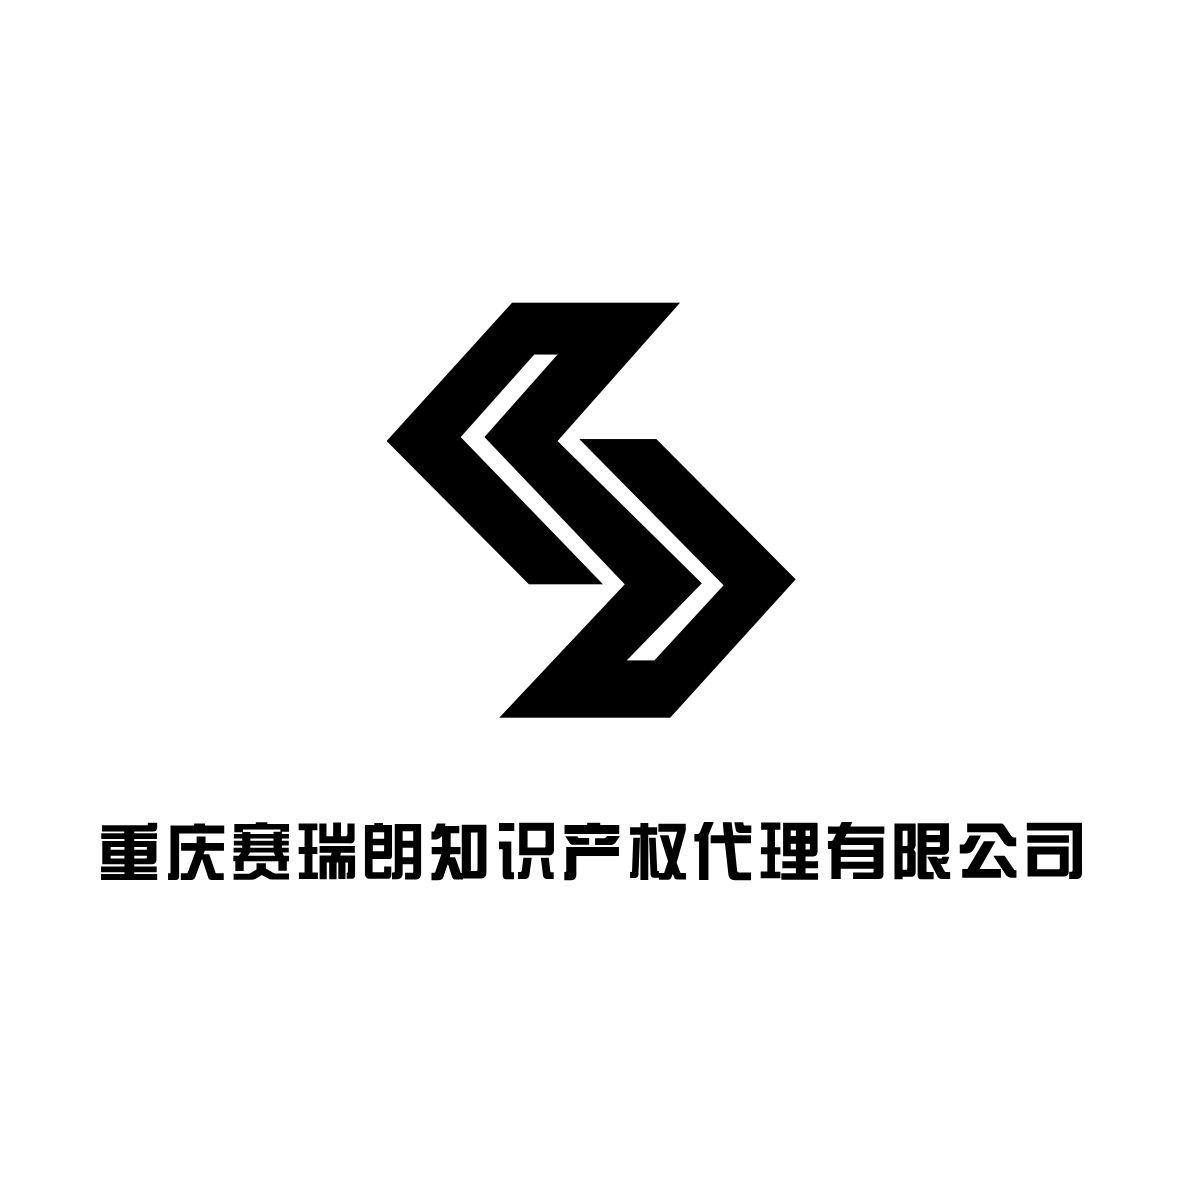 重庆赛瑞朗知识产权代理有限公司